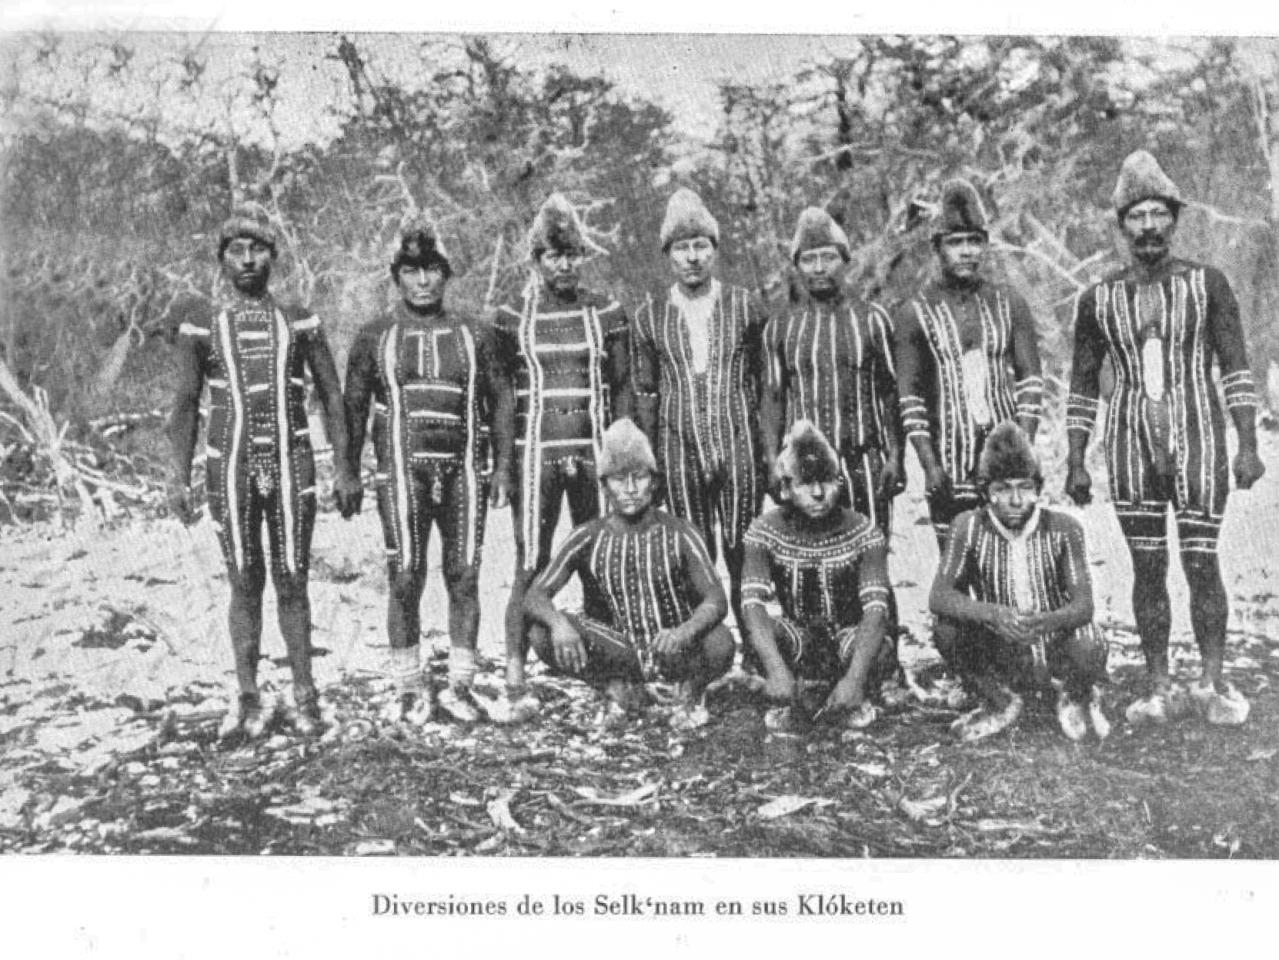 Grupo de hombres selk'nam reunidos en la celebración de un Kloketen, con rostros y cuerpos pintados según la costumbre